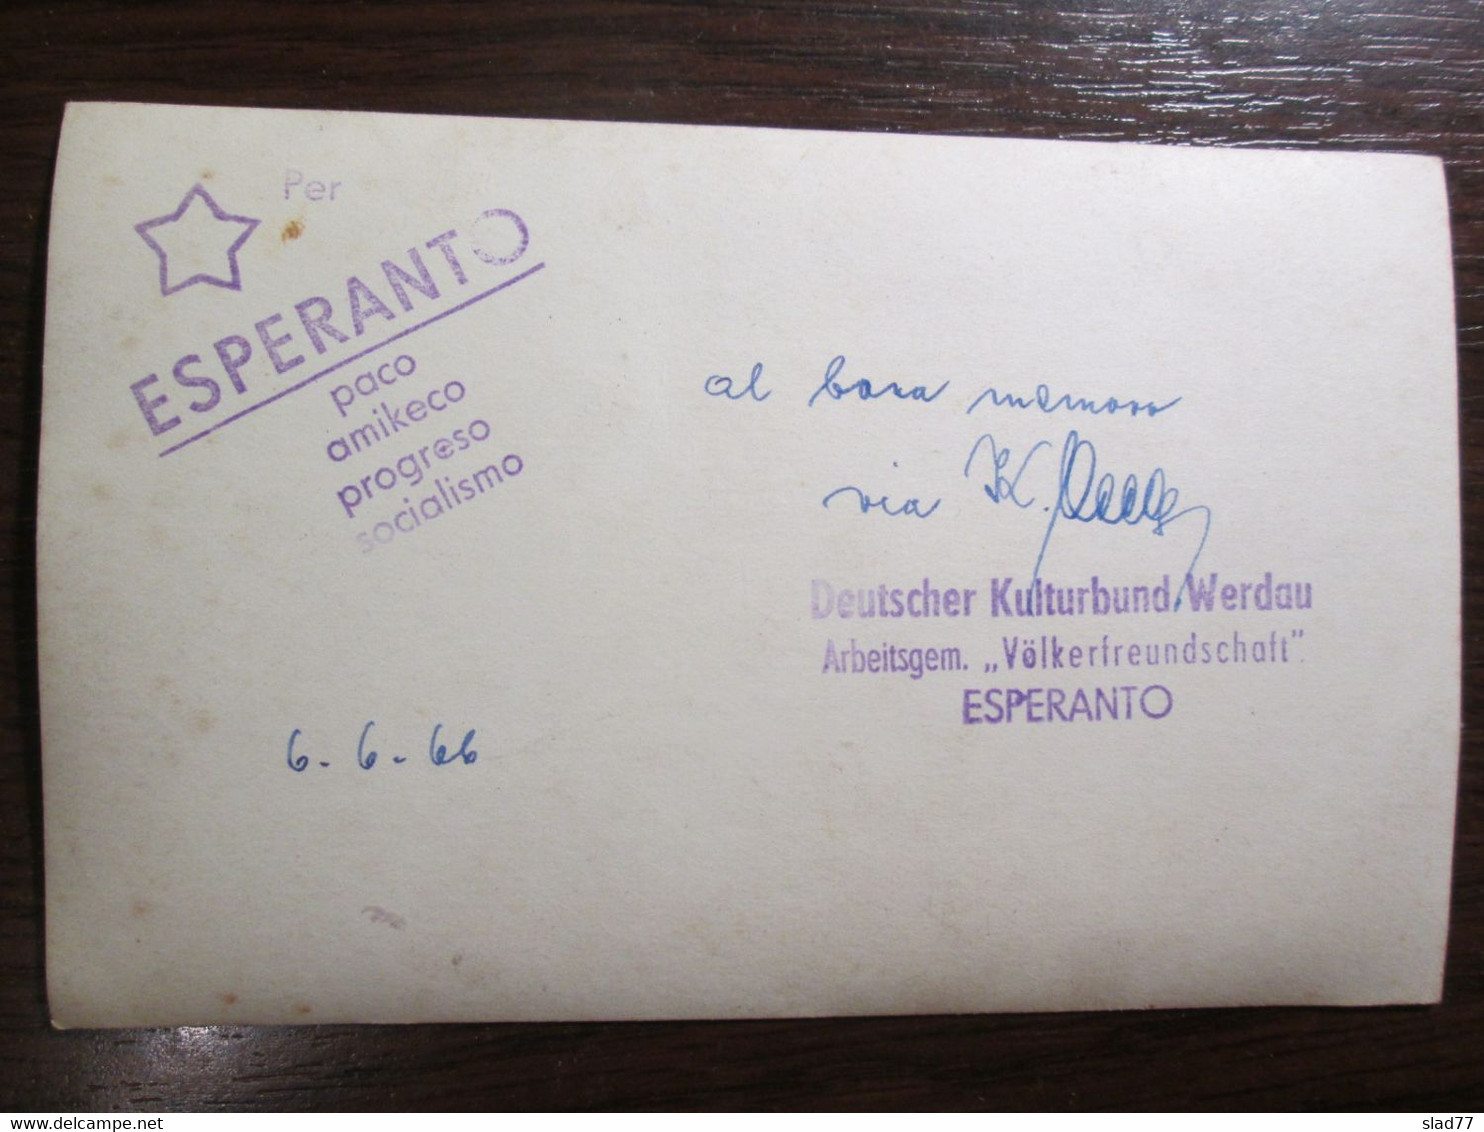 Esperanto German Cultural Association Werdau 1966. - Esperanto